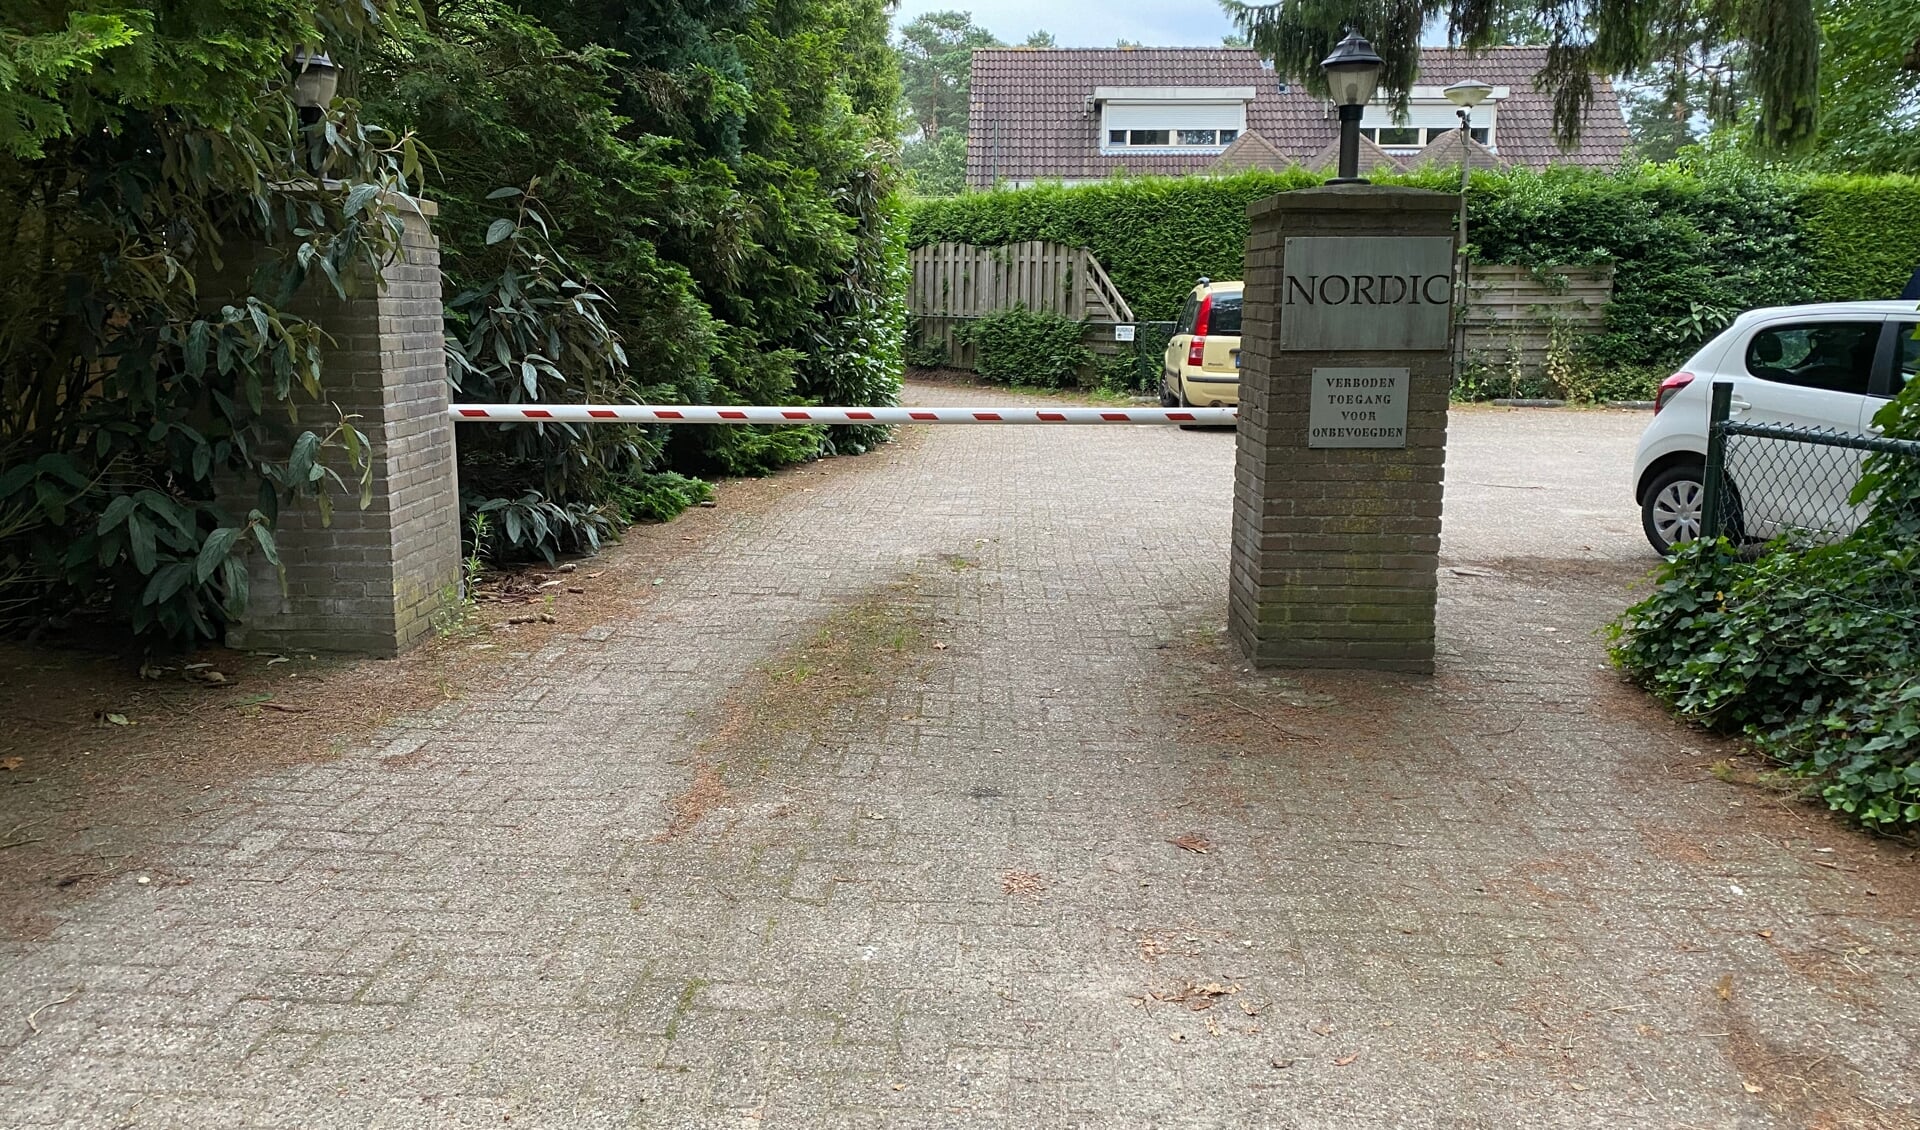 De ingang van het park waar Laurens Nutbey een chalet heeft.